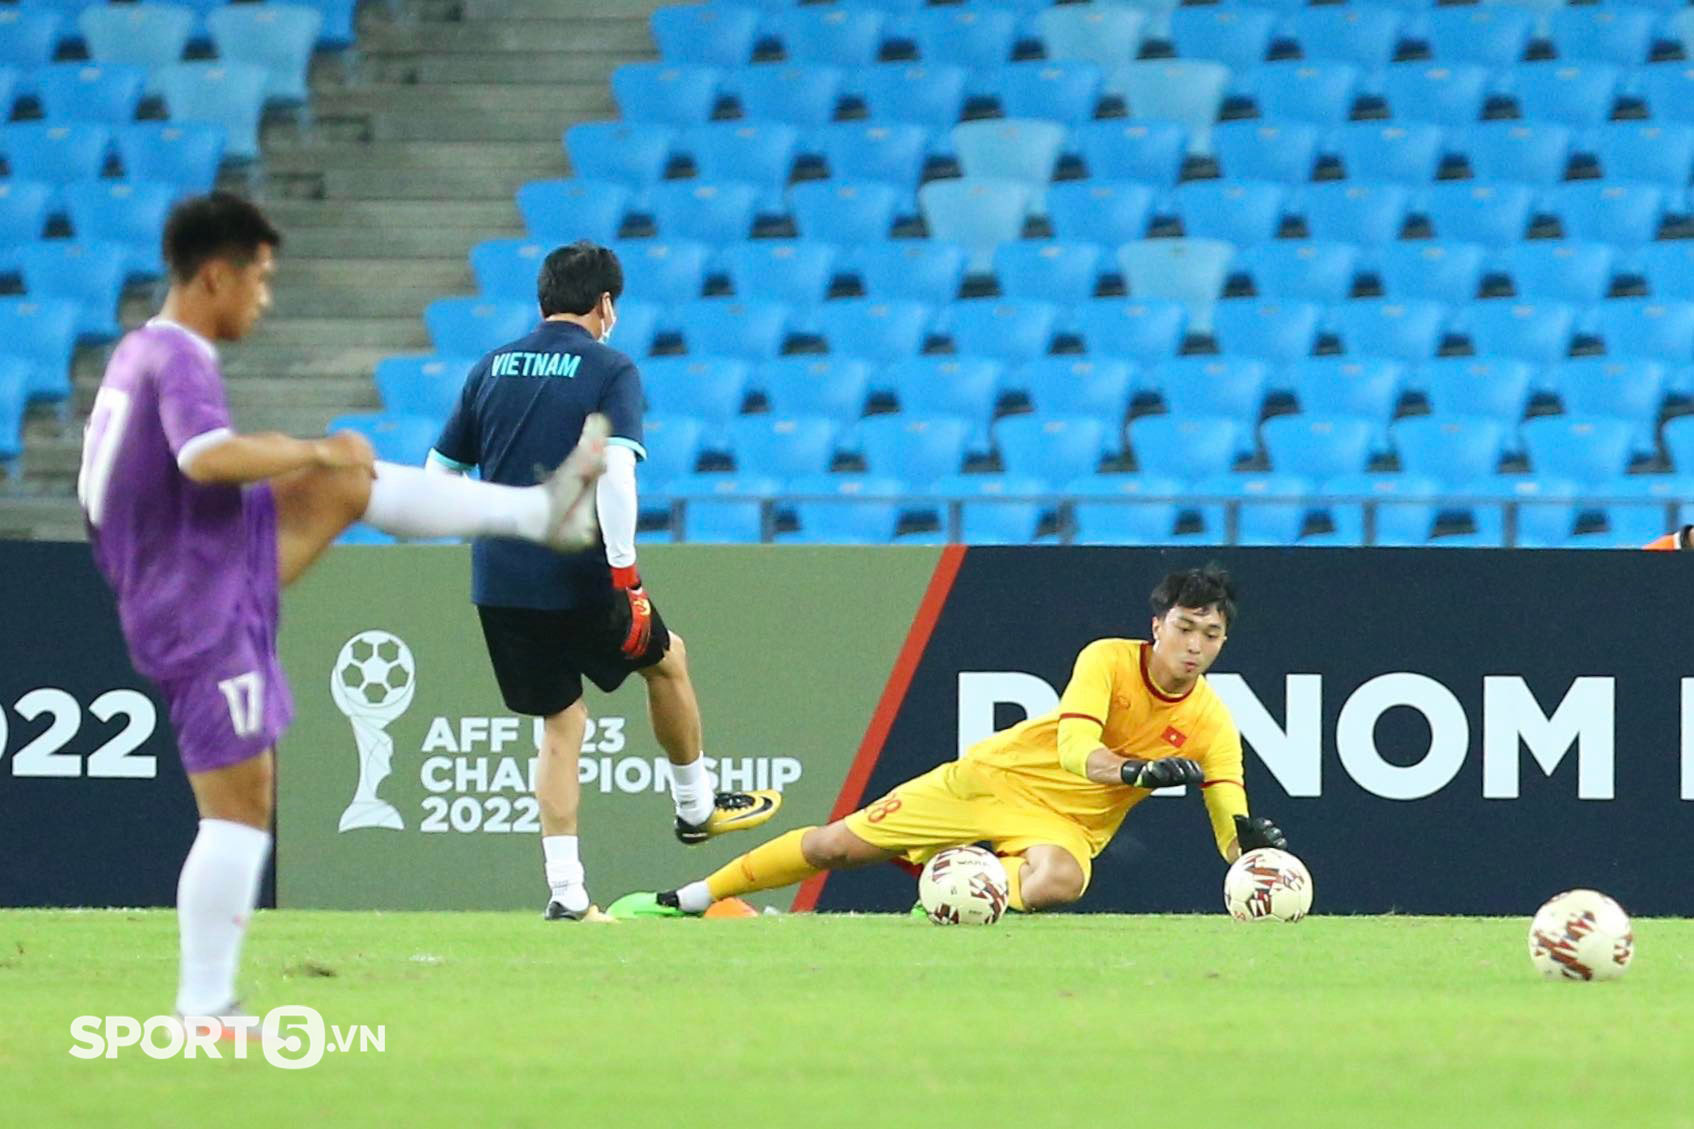 TUYỆT VỜI!!! Vượt khó khăn chưa từng có trong lịch sử, U23 Việt Nam vào chung kết đấu Thái Lan sau loạt luân lưu - Ảnh 19.